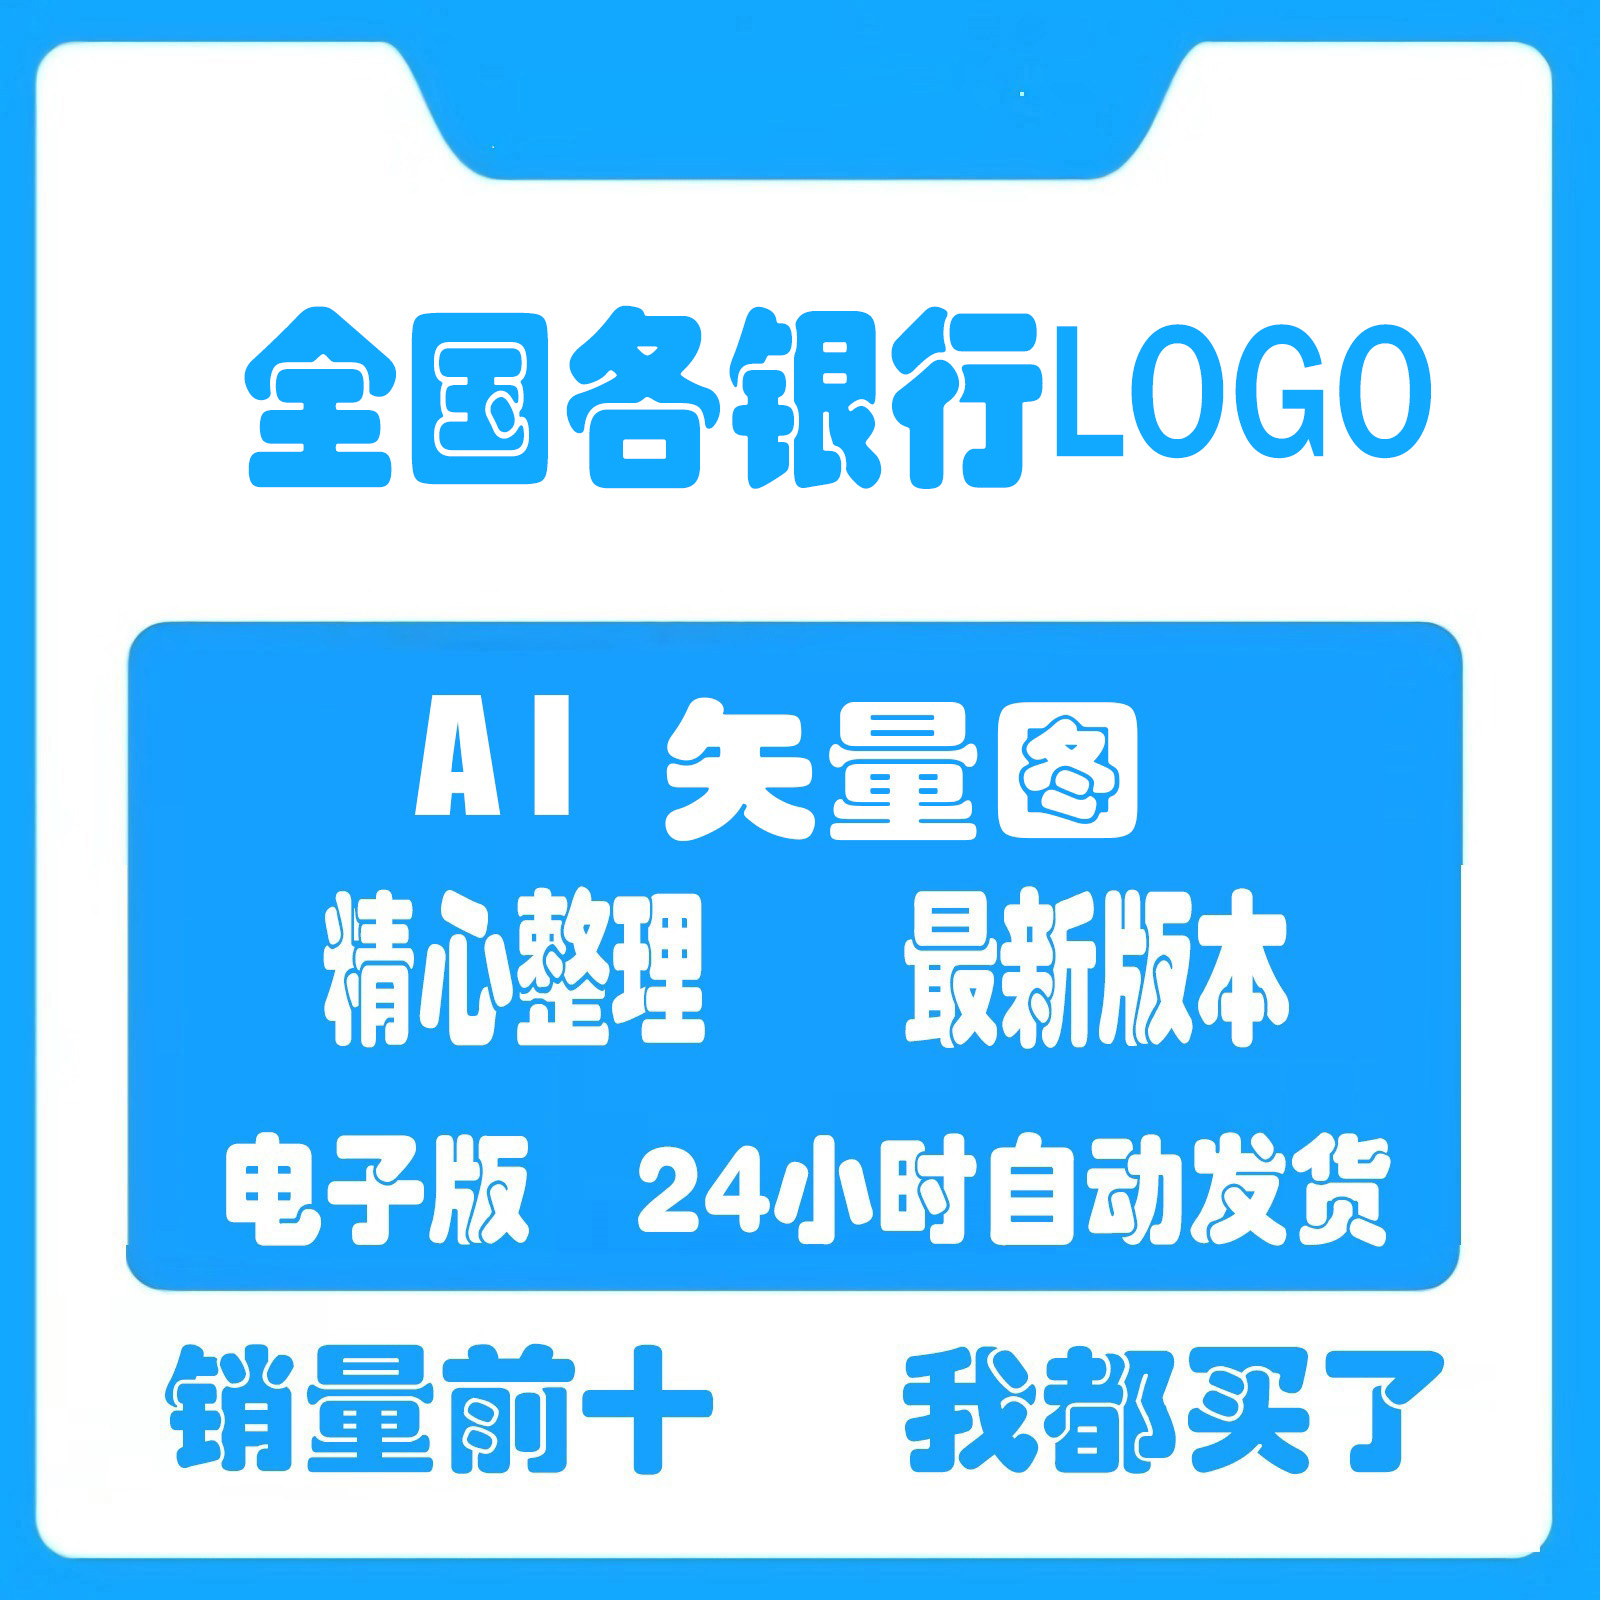 中国四大银行建设工商金融银联地方发展银行logo标志AI矢量图标